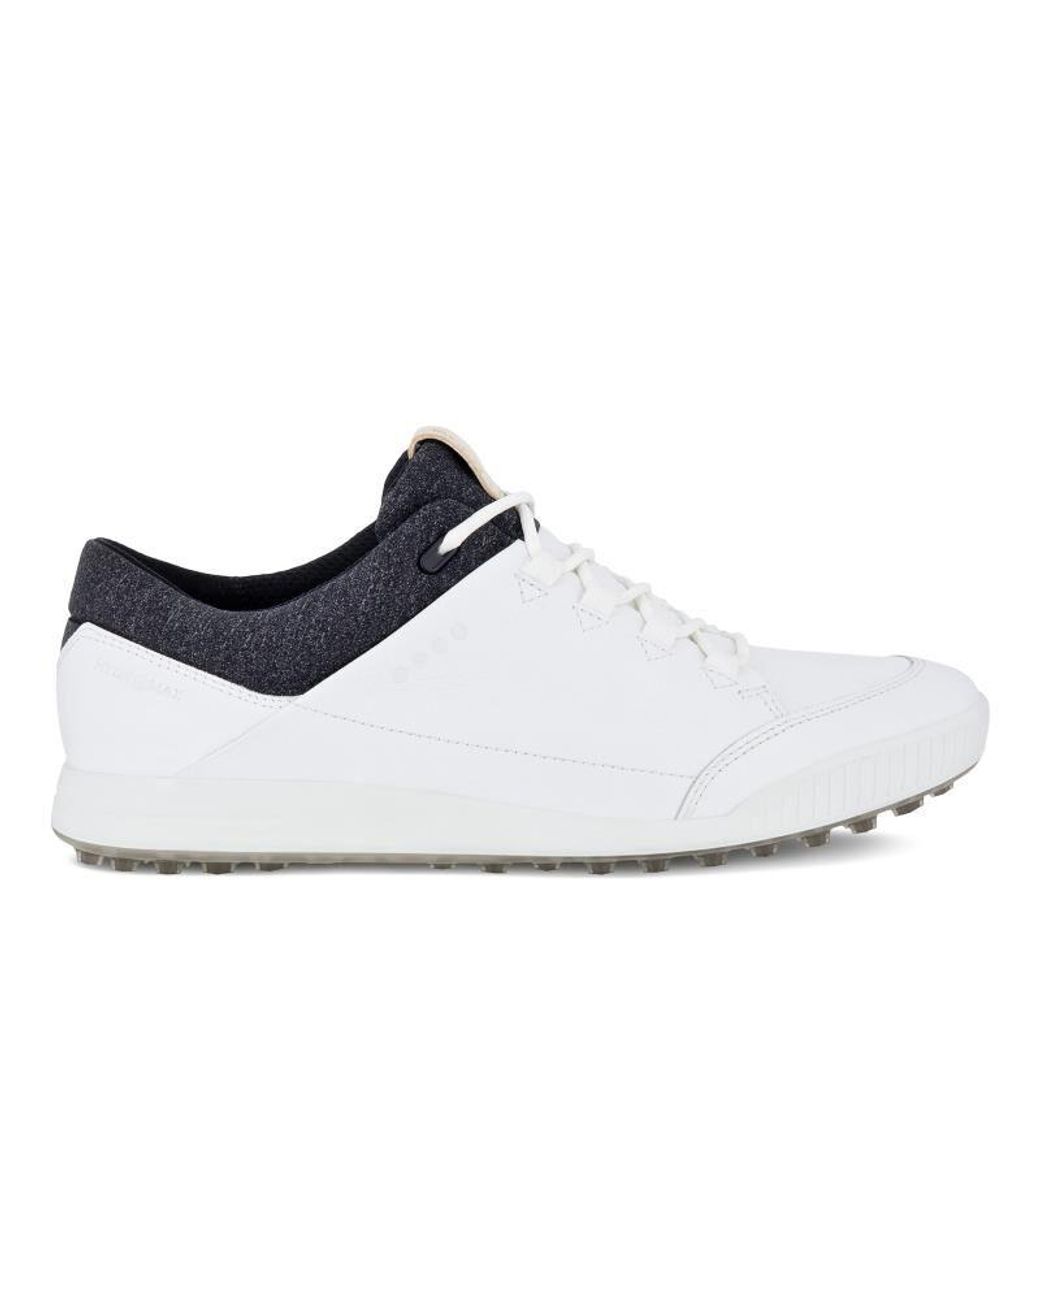 Vilebrequin Leather Ecco Street Retro Golf Shoes in Bright White (White ...